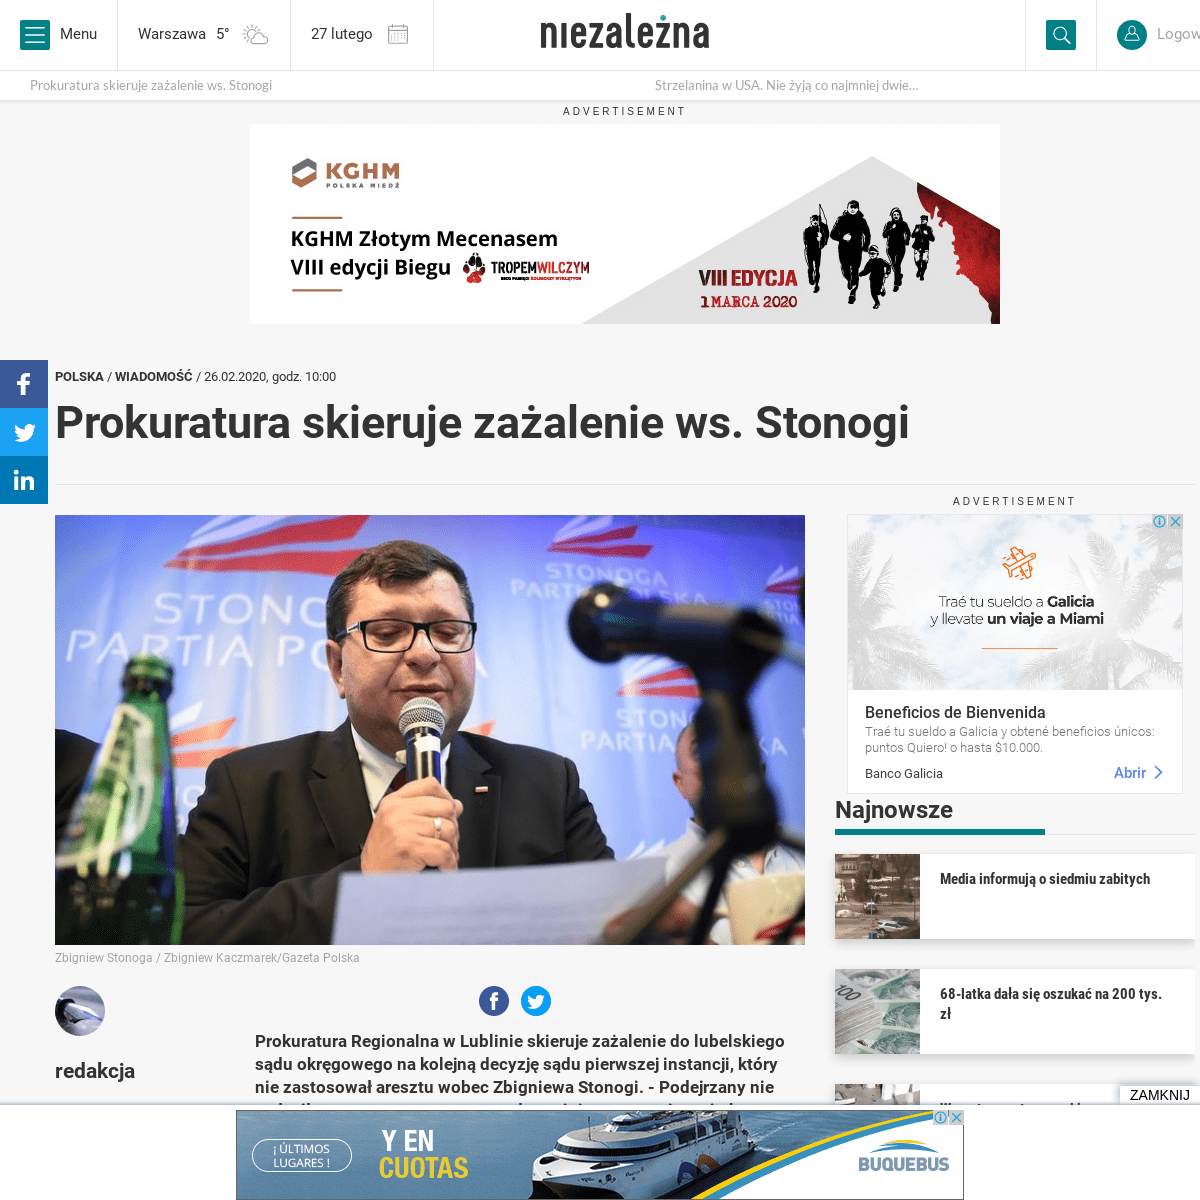 A complete backup of niezalezna.pl/312791-prokuratura-skieruje-zazalenie-ws-stonogi